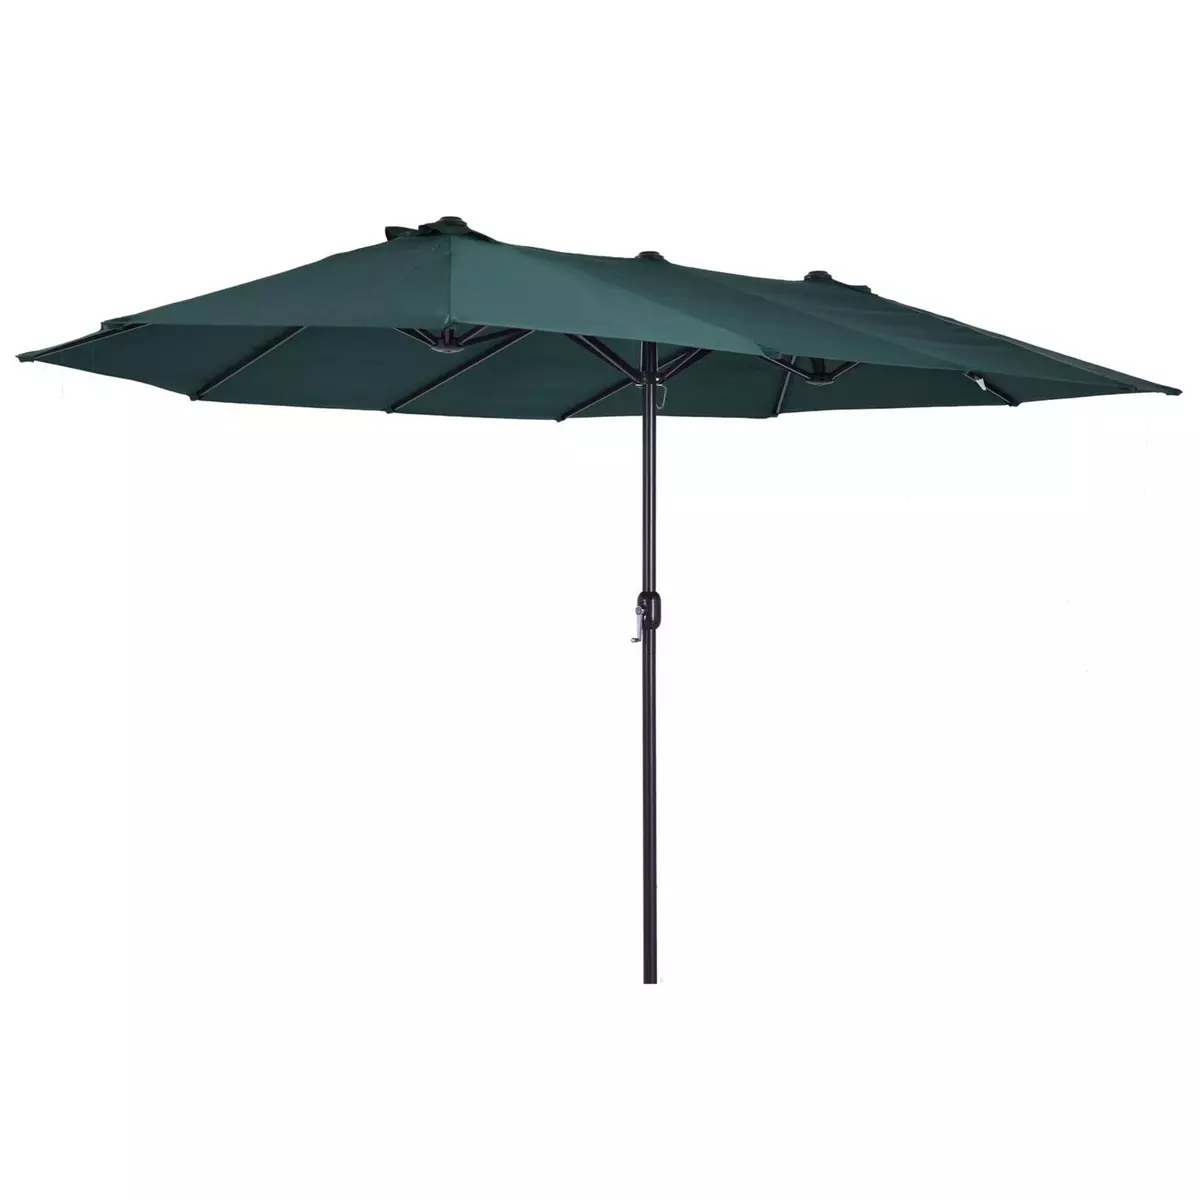 OUTSUNNY Parasol de jardin XXL parasol grande taille 4,6L x 2,7l x 2,4H m ouverture fermeture manivelle acier polyester haute densité vert